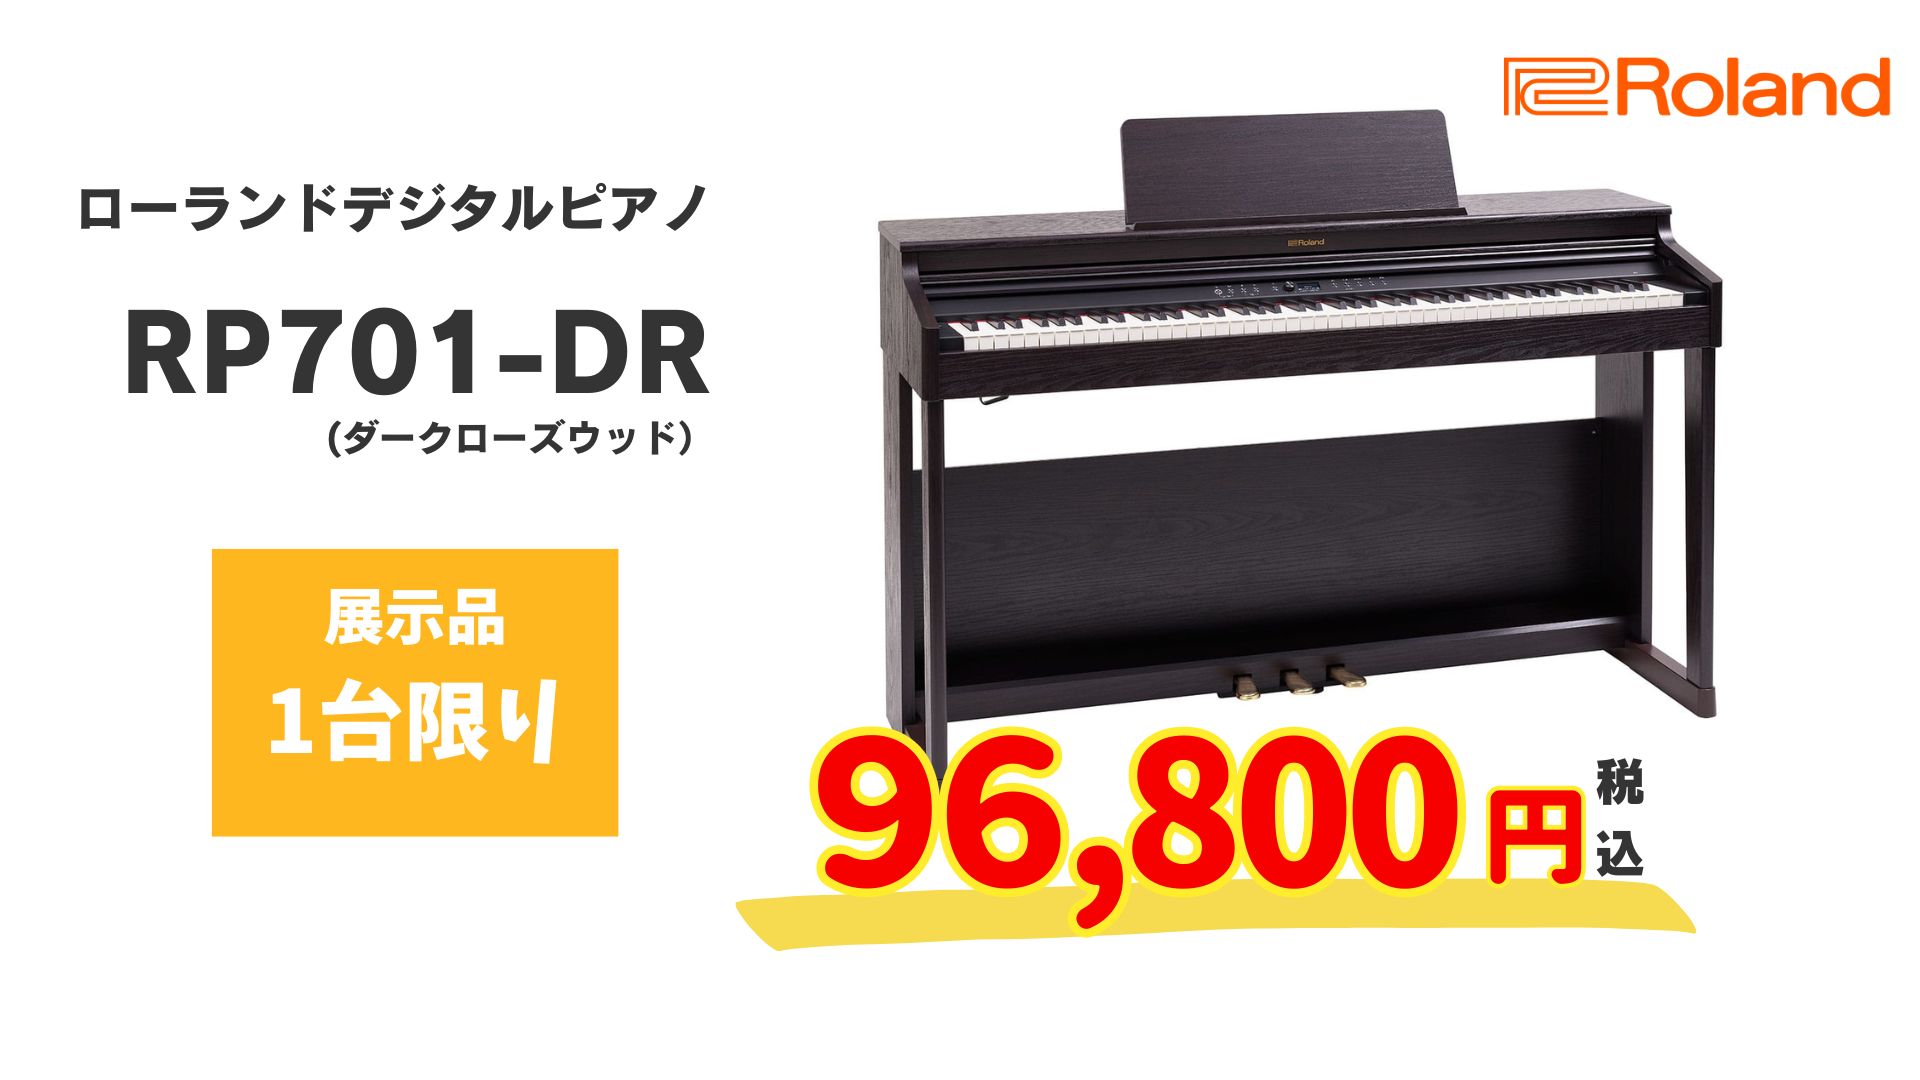 人気のローランド電子ピアノが展示品特価でお買い得!1台限りのため是非 